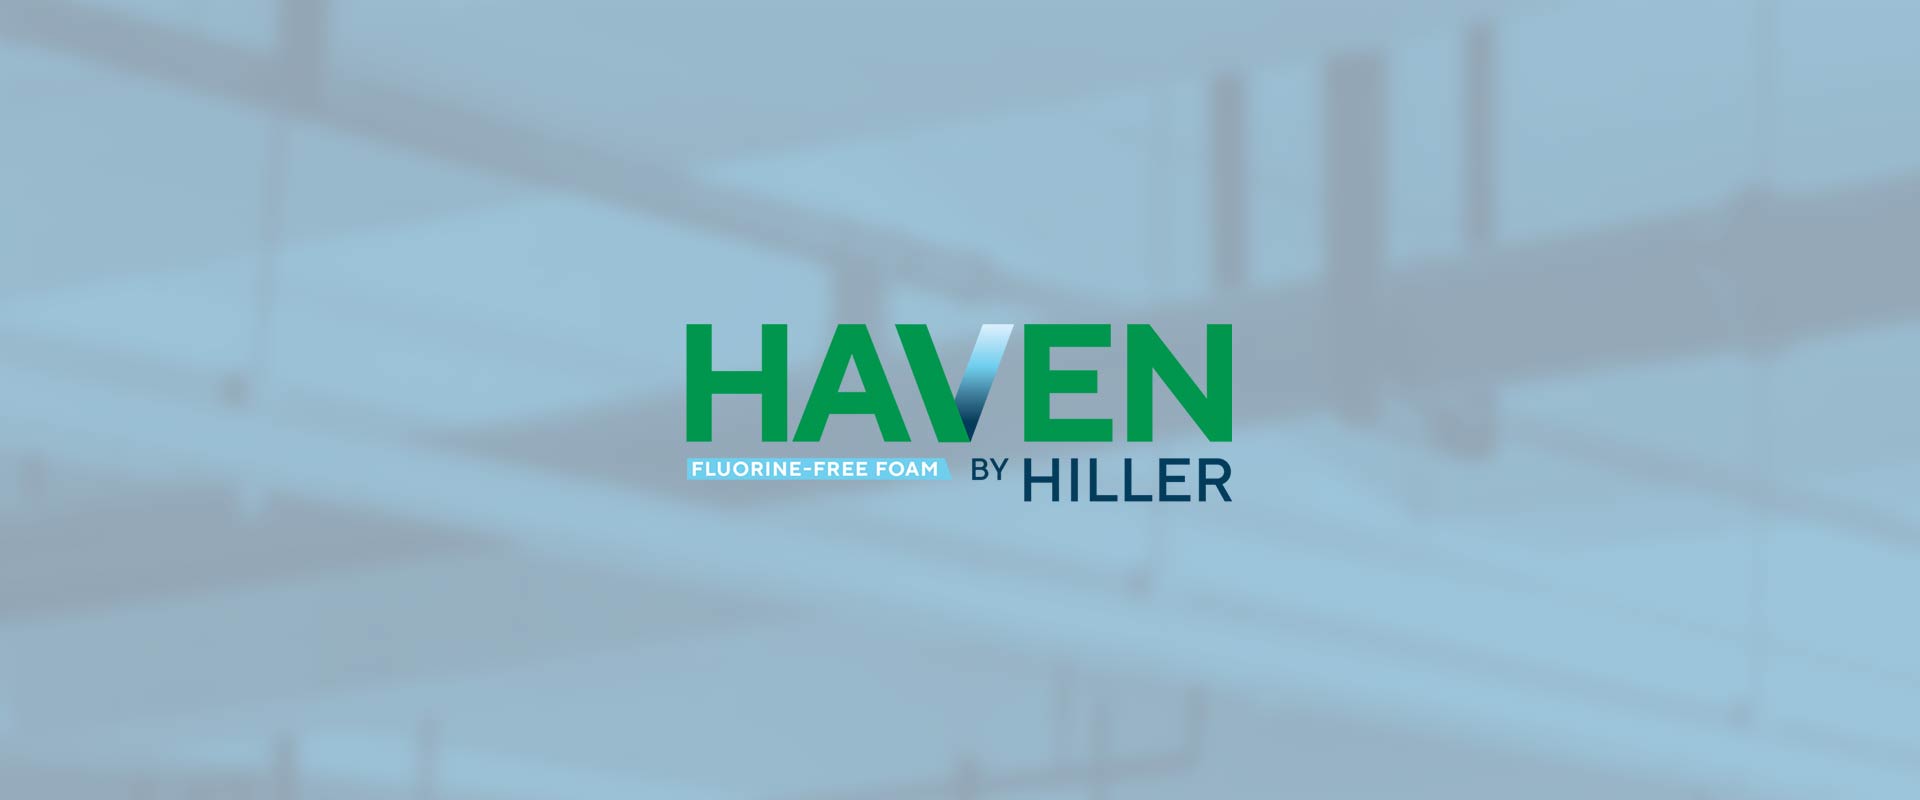 Hiller Announces U.S.C.G.-Approved Fluorine-Free Foam